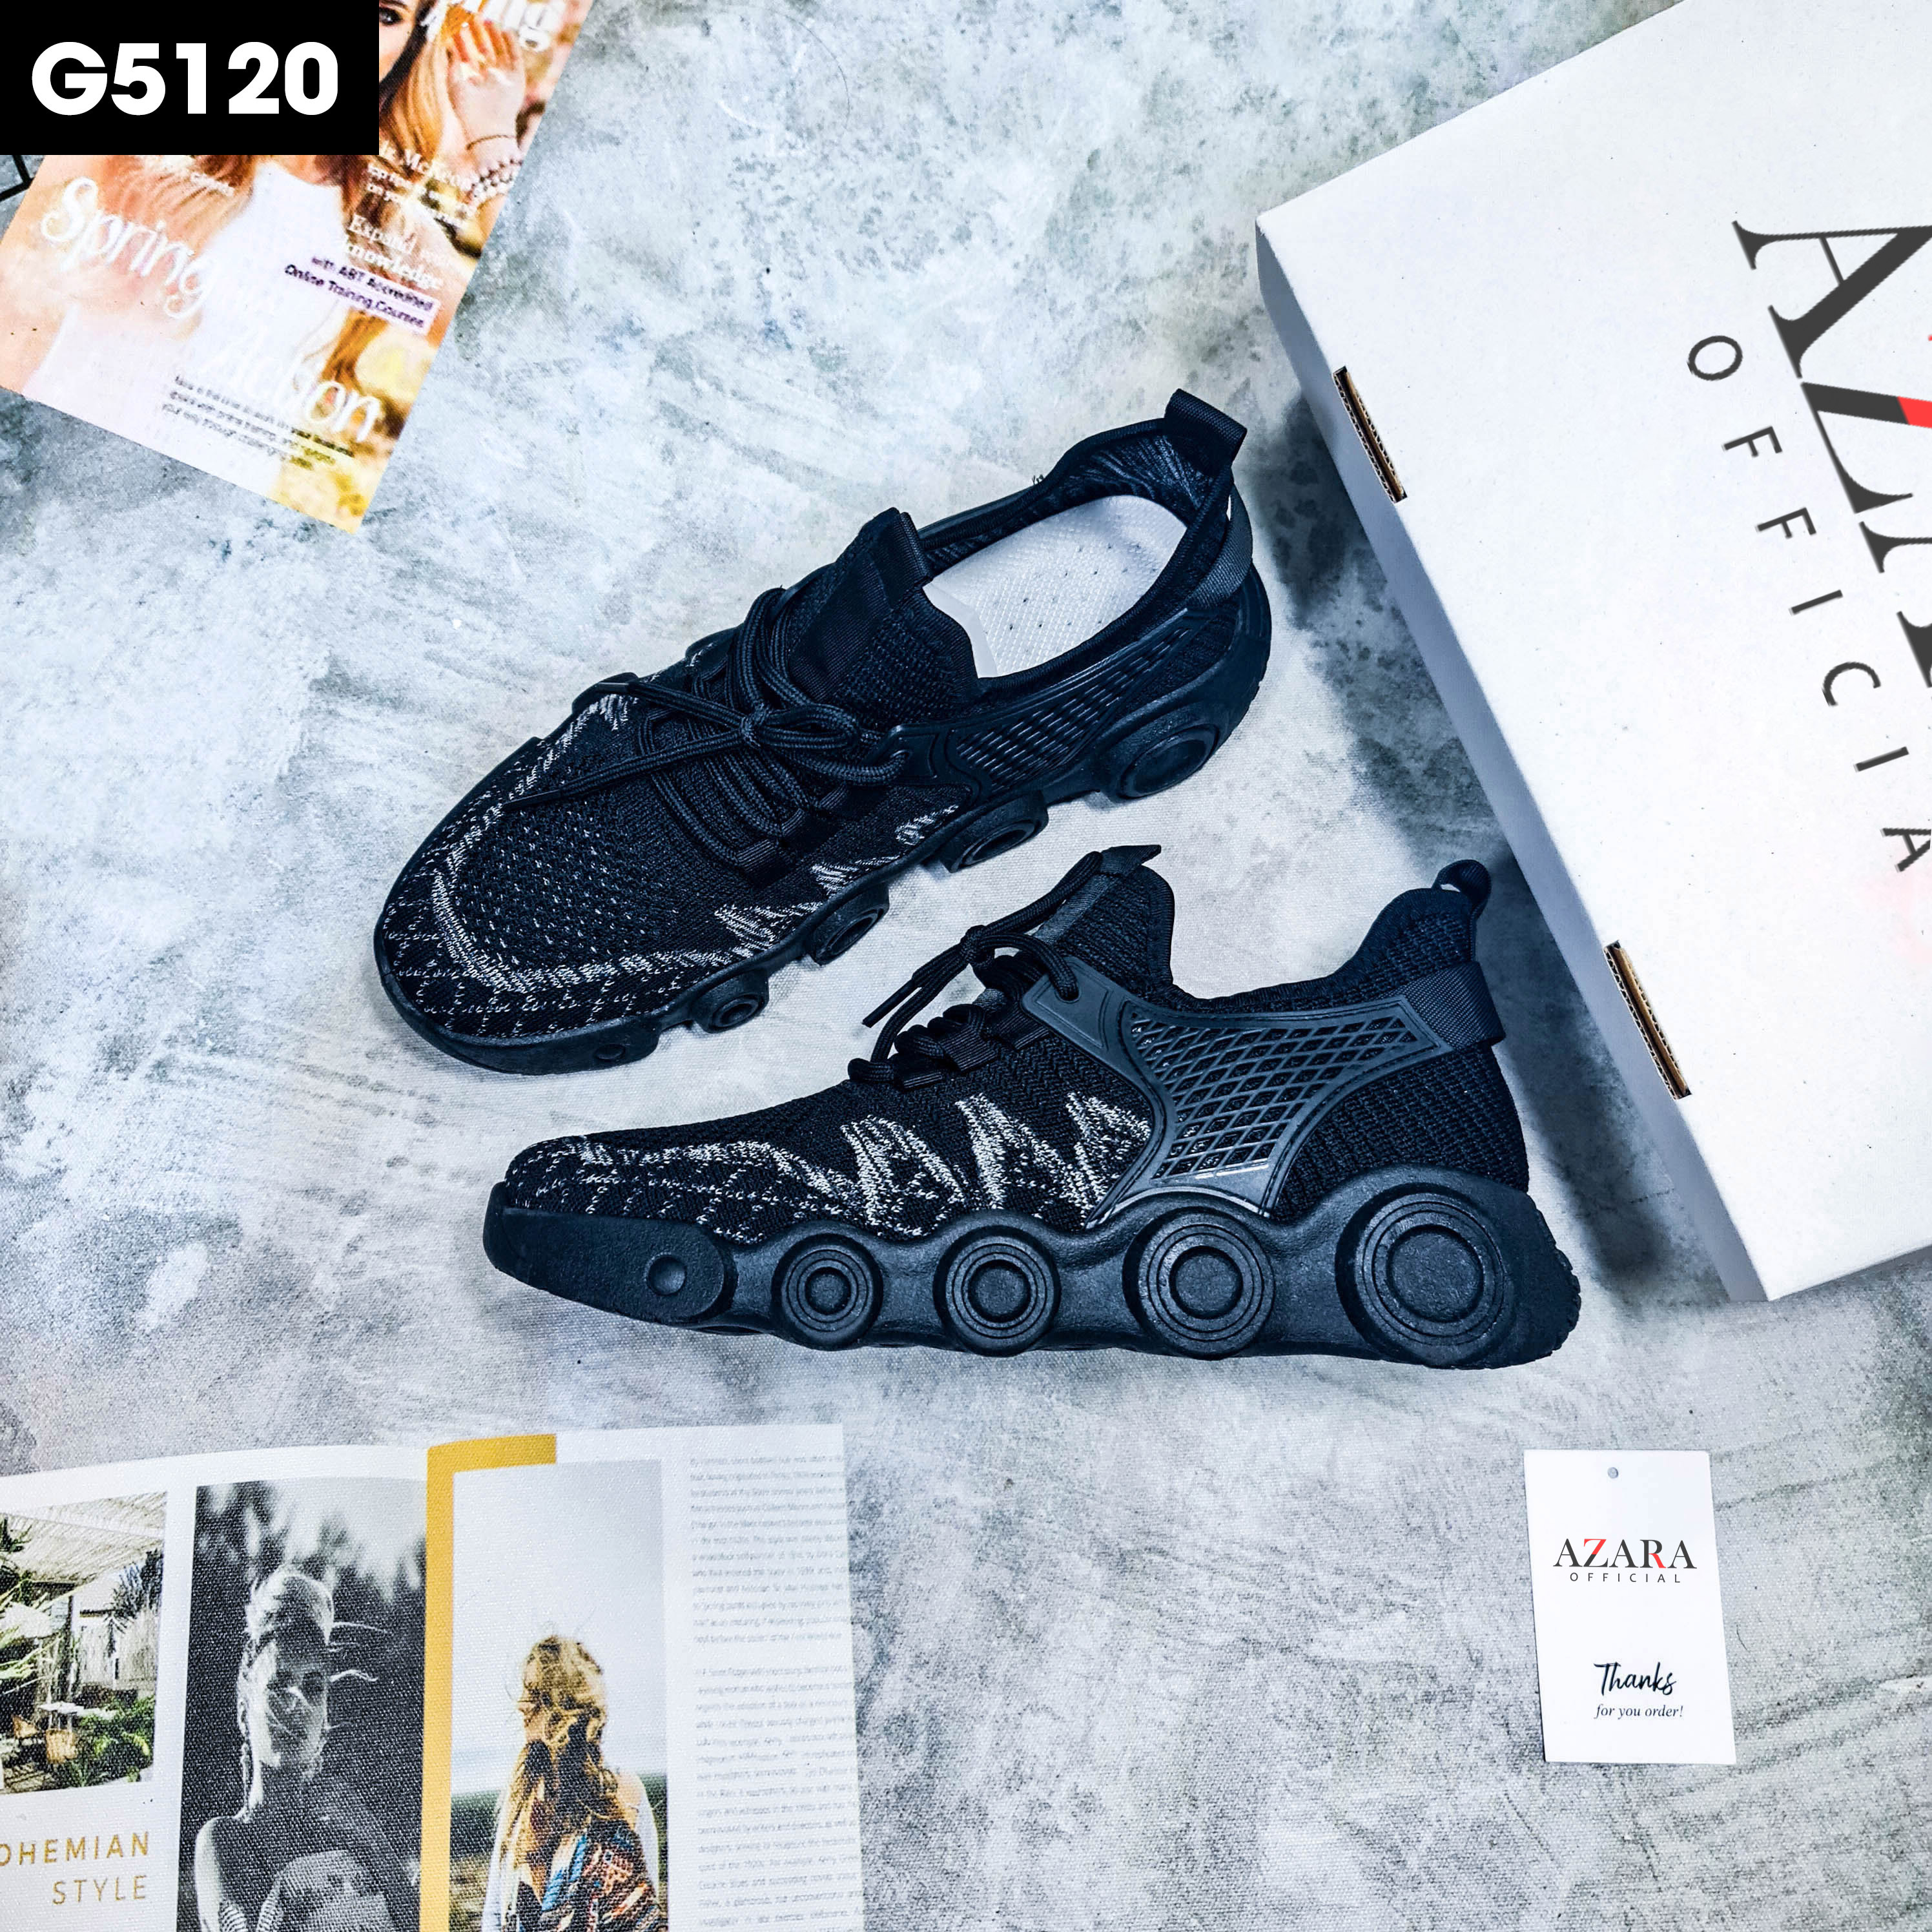 Giày Thể Thao Nam AZARA - Giày Sneaker Màu Đen - Kaki, Giày Sneaker Nam Đế Độn Chuẩn Đẹp - G5120